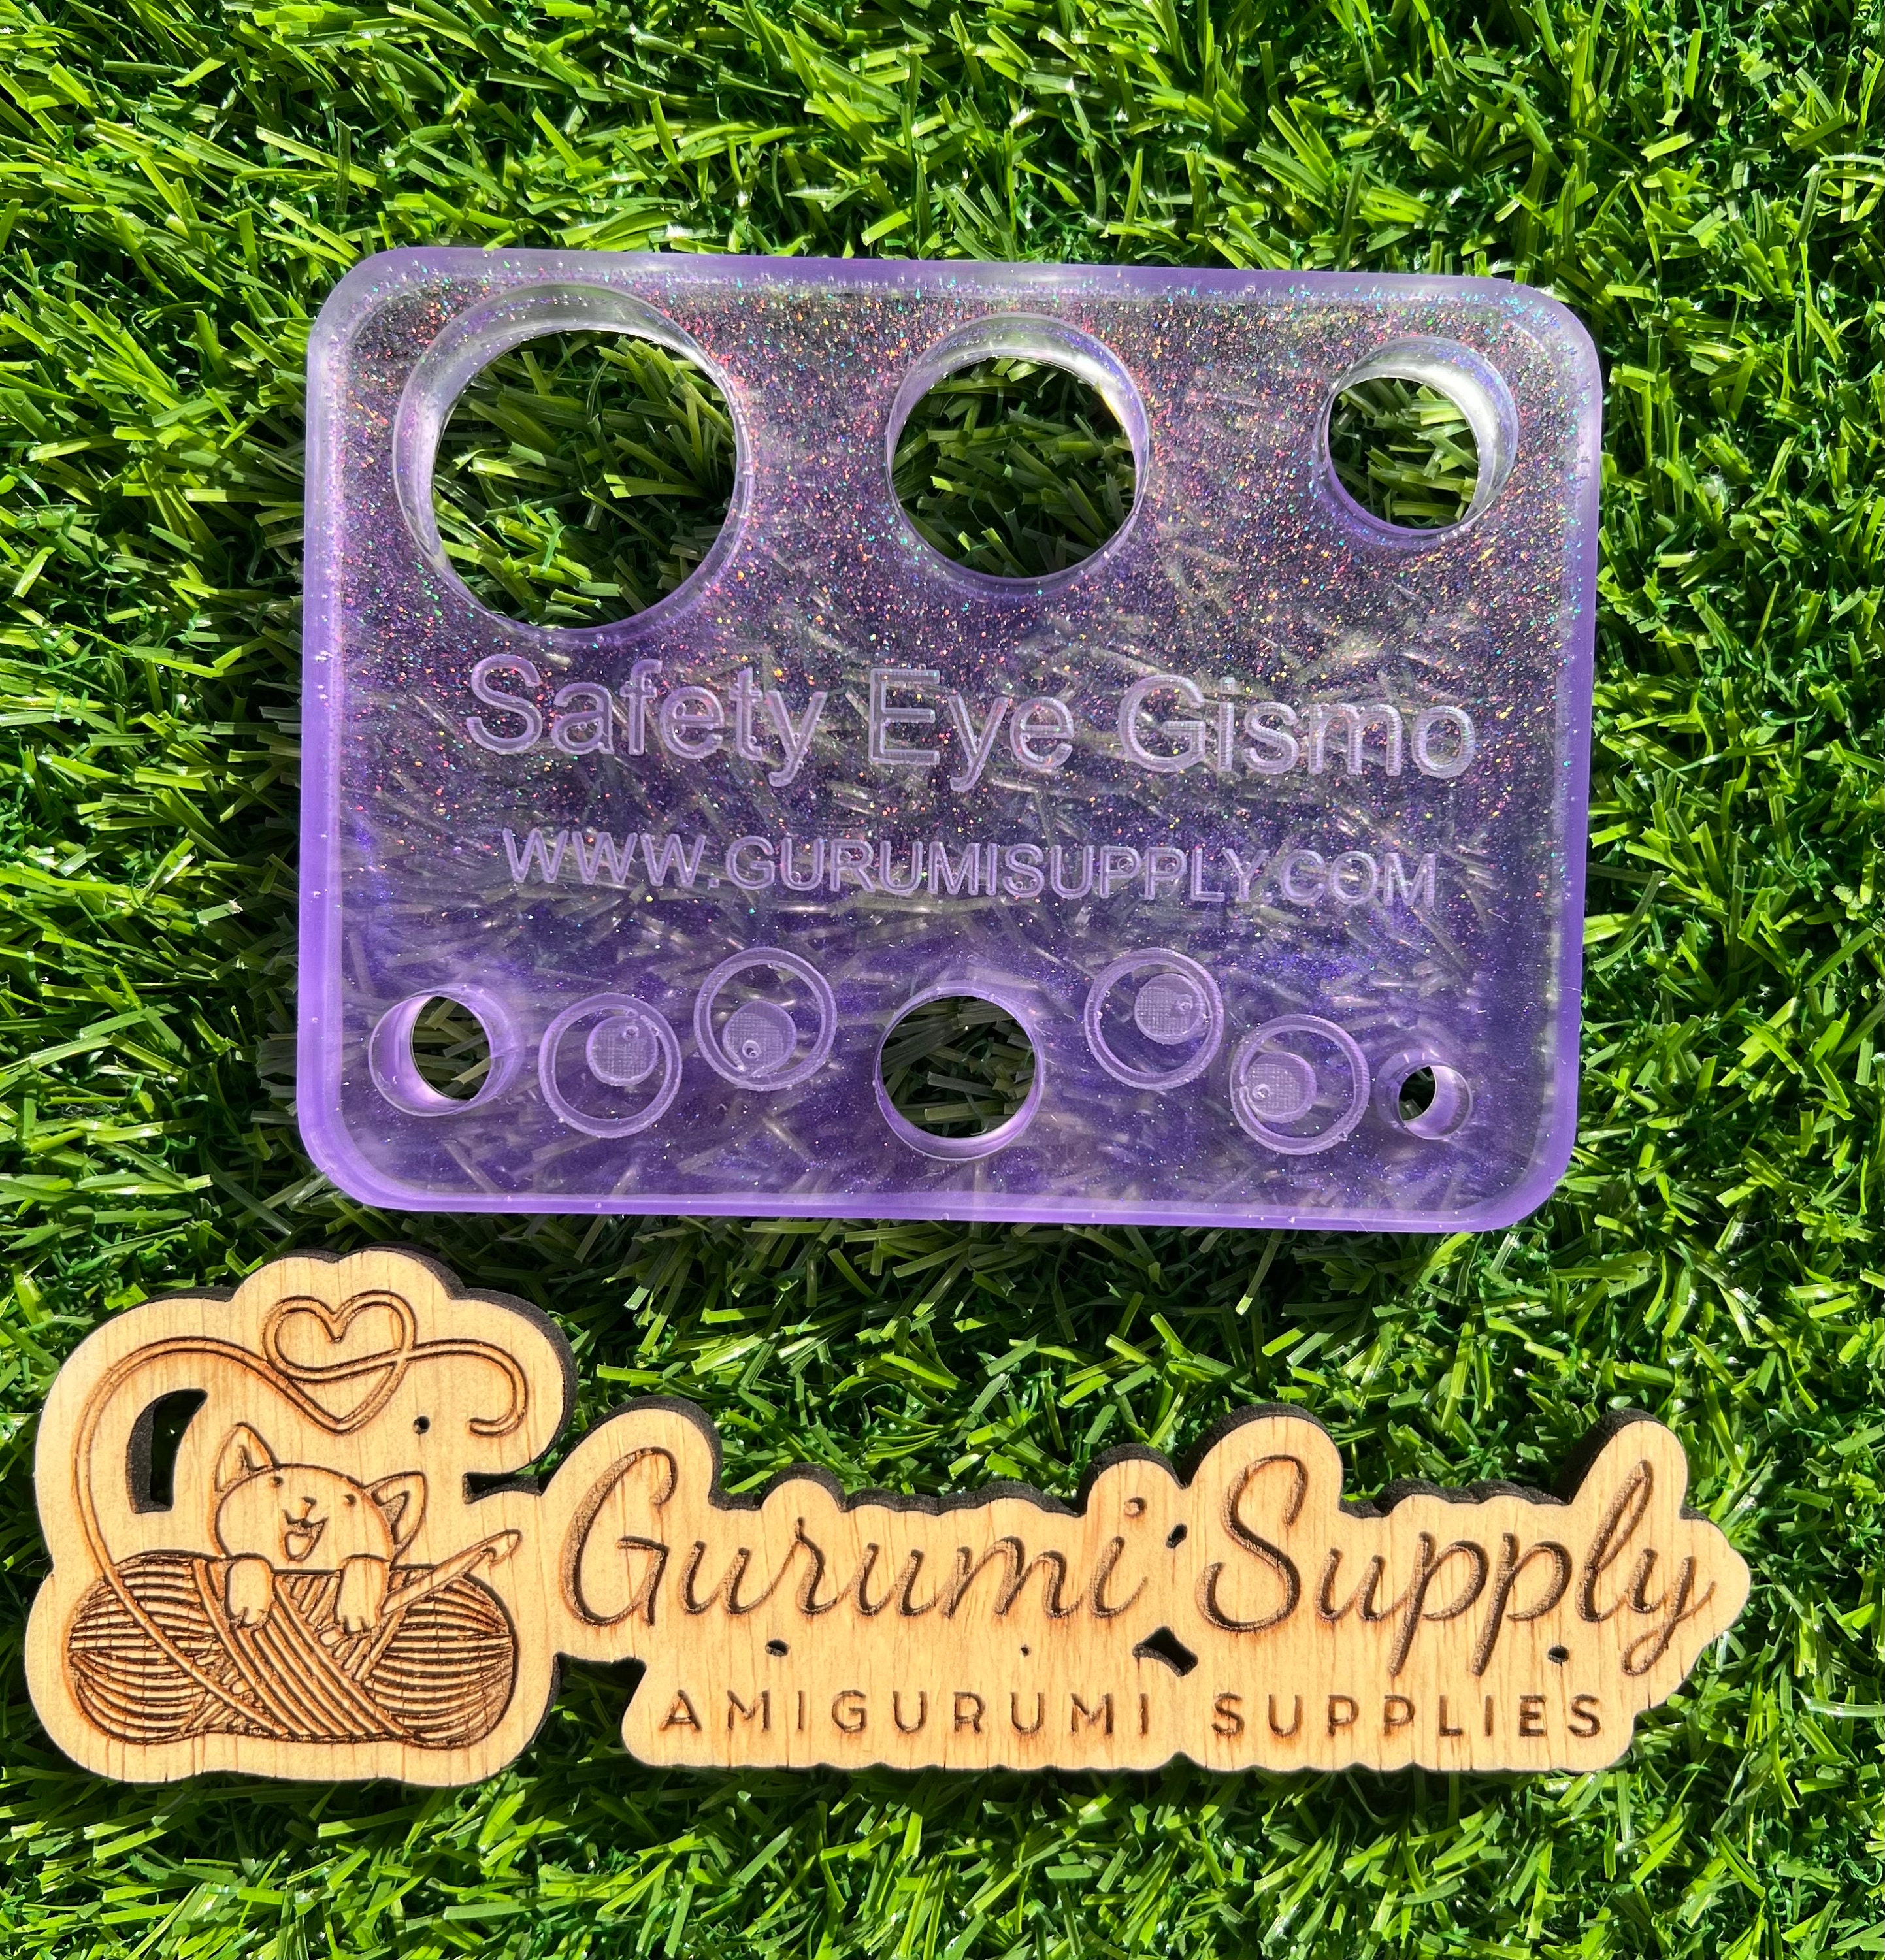 Safety Eye Gismo - Petite Size - On-the-Go - Keychain - Safety Eye Tool - Safety  Eye Jig - Safety Eye Helper - Wood - Trapezoid - Amigurumi